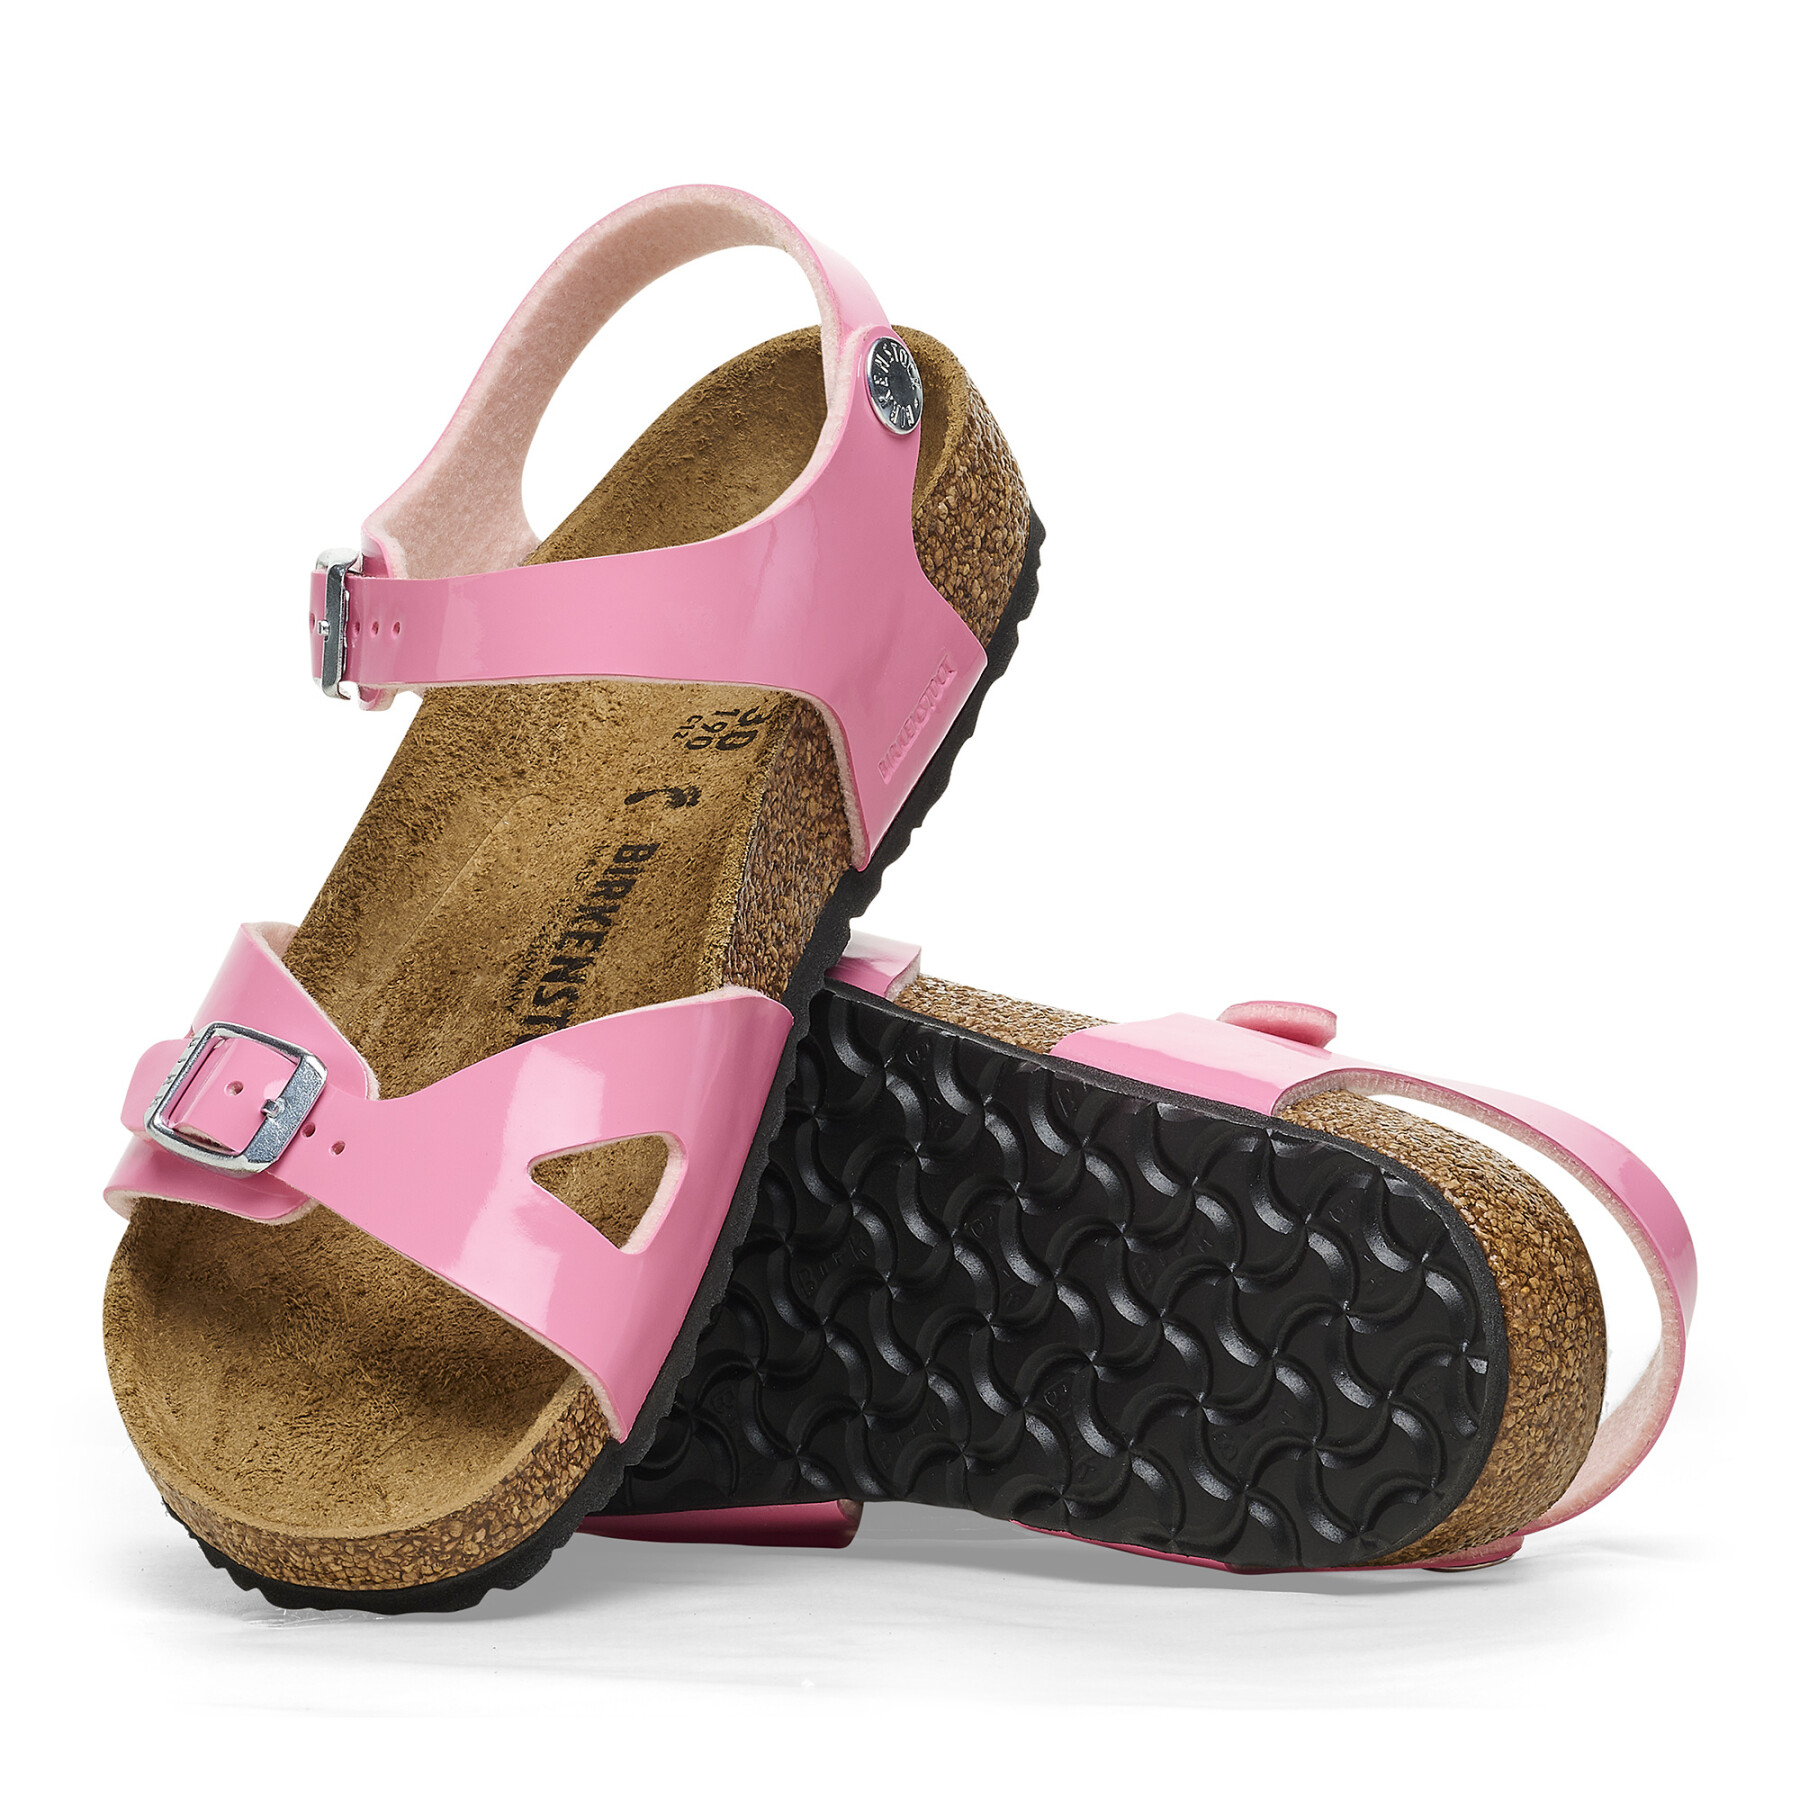 Girl's sandals Birkenstock Rio Birko-Flor Patent